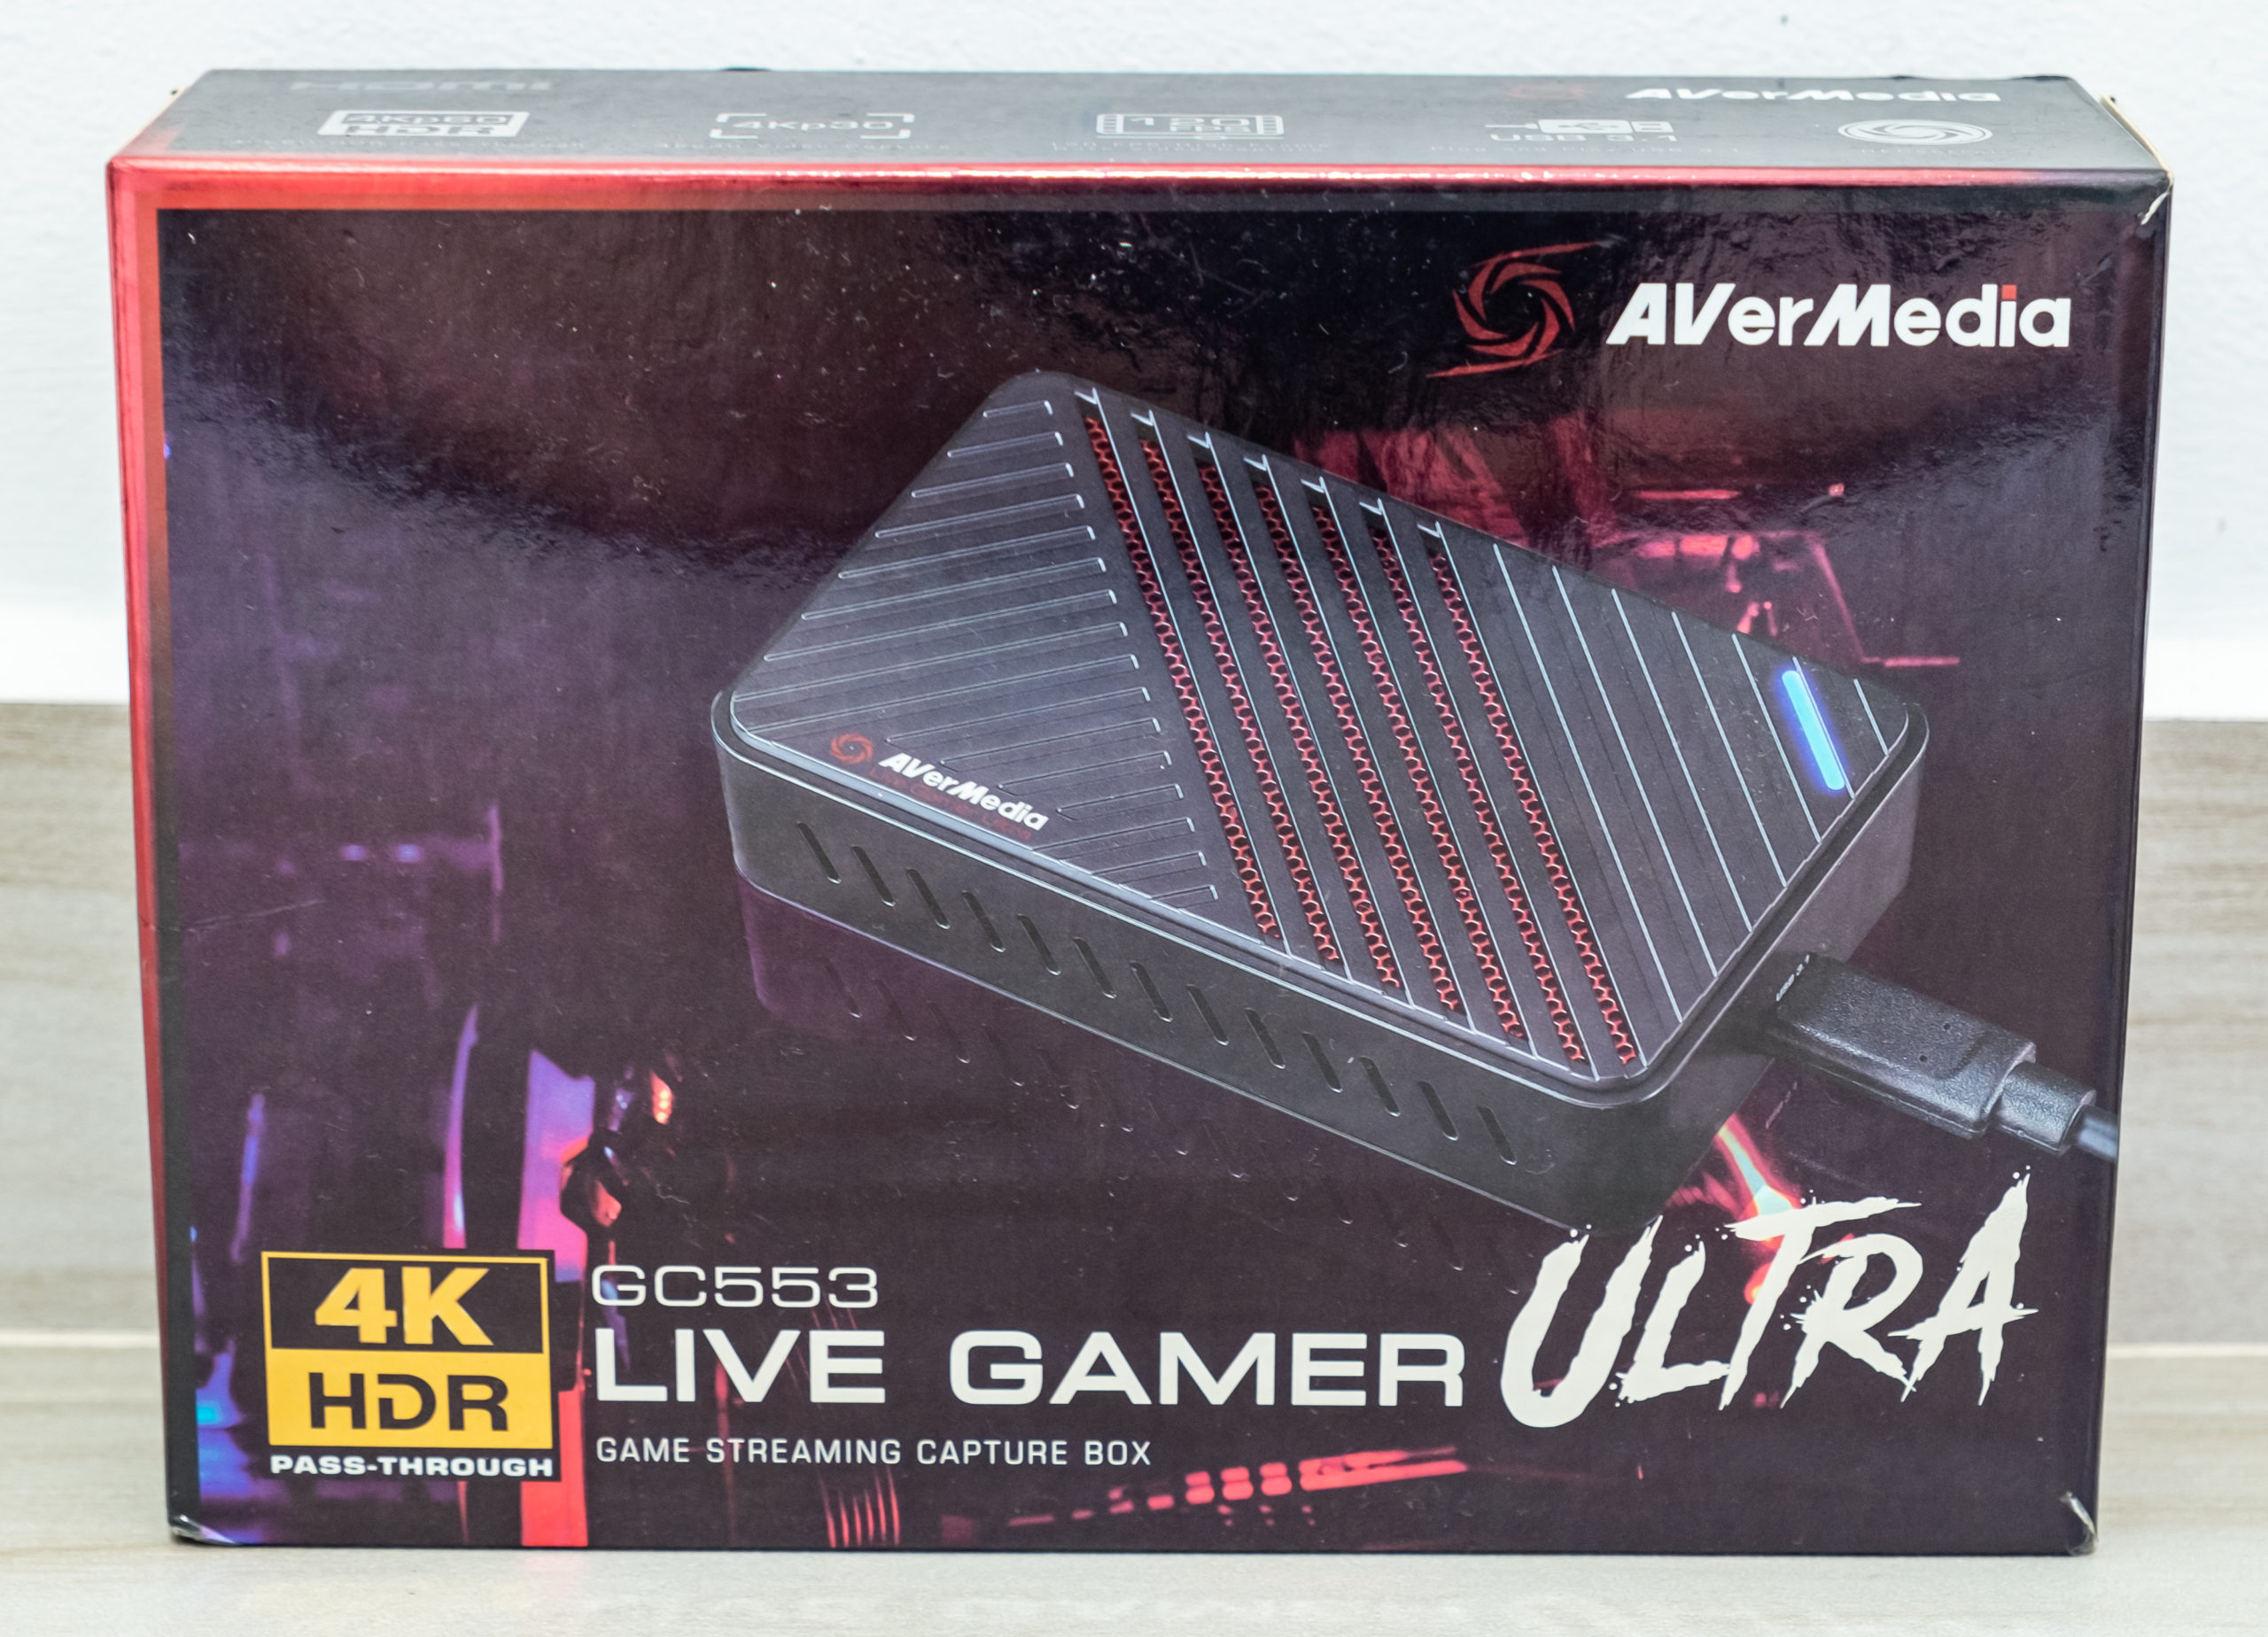 レインボーシックス Live AVerMedia Gamer GC553 Ultra PC周辺機器